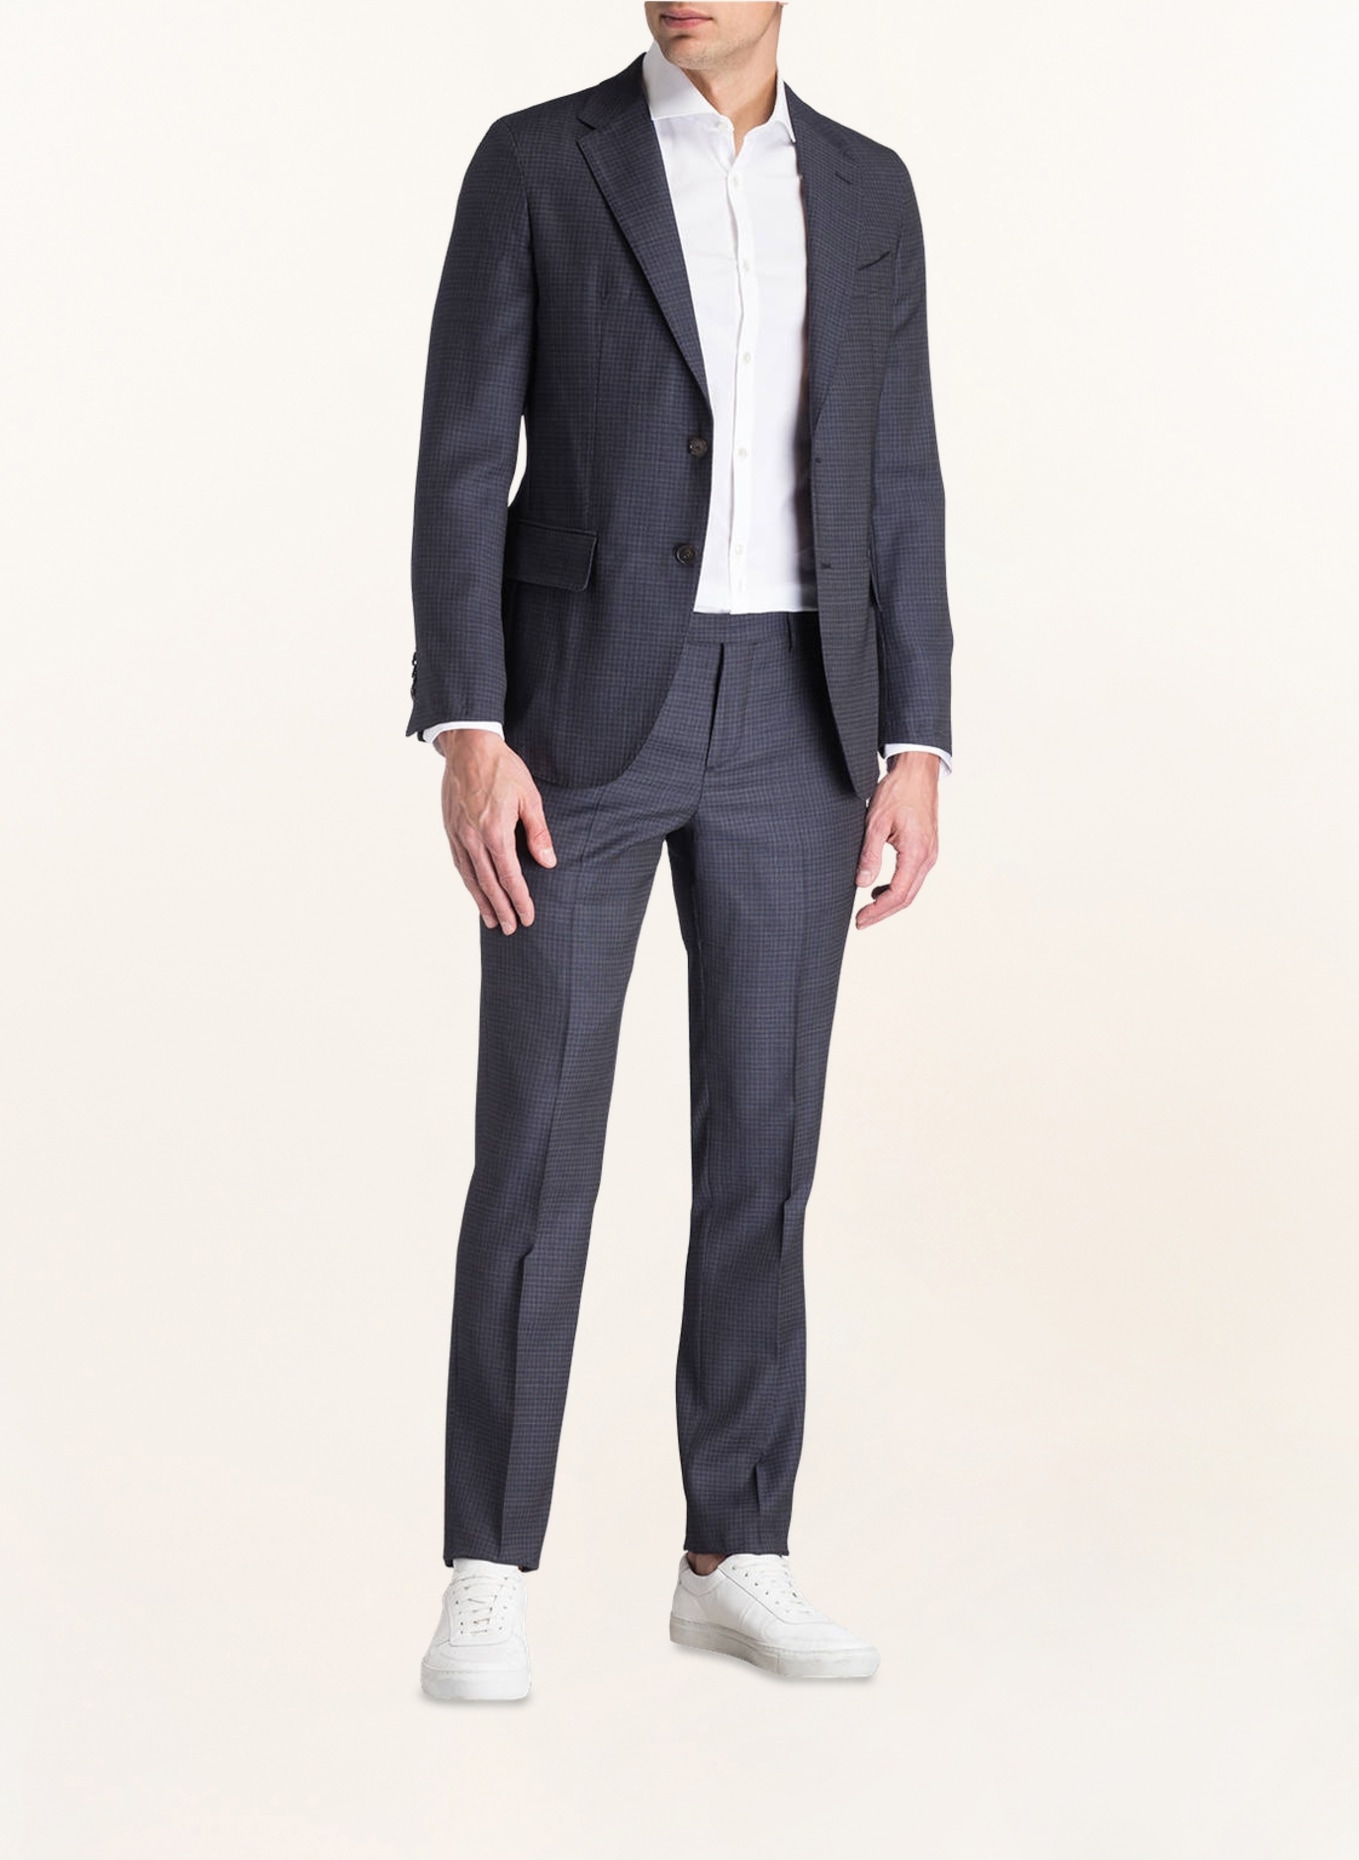 PAUL Suit jacket Slim Fit, Color: 105 navy (Image 2)